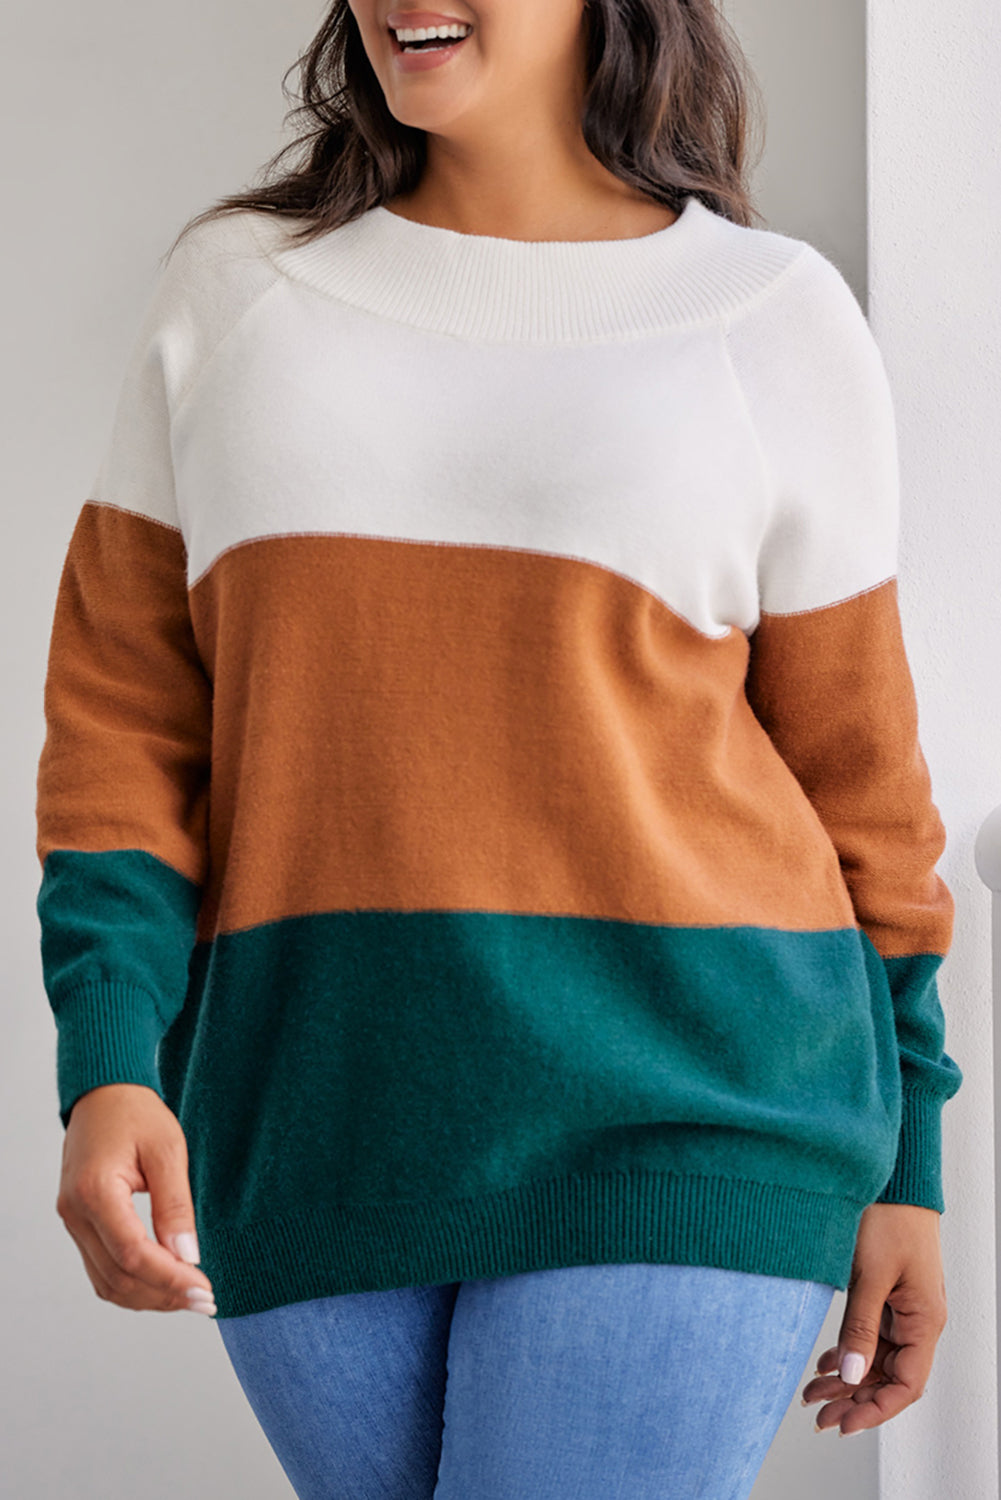 Smeđi pulover velike veličine s rebrastim obrubom u boji blokova